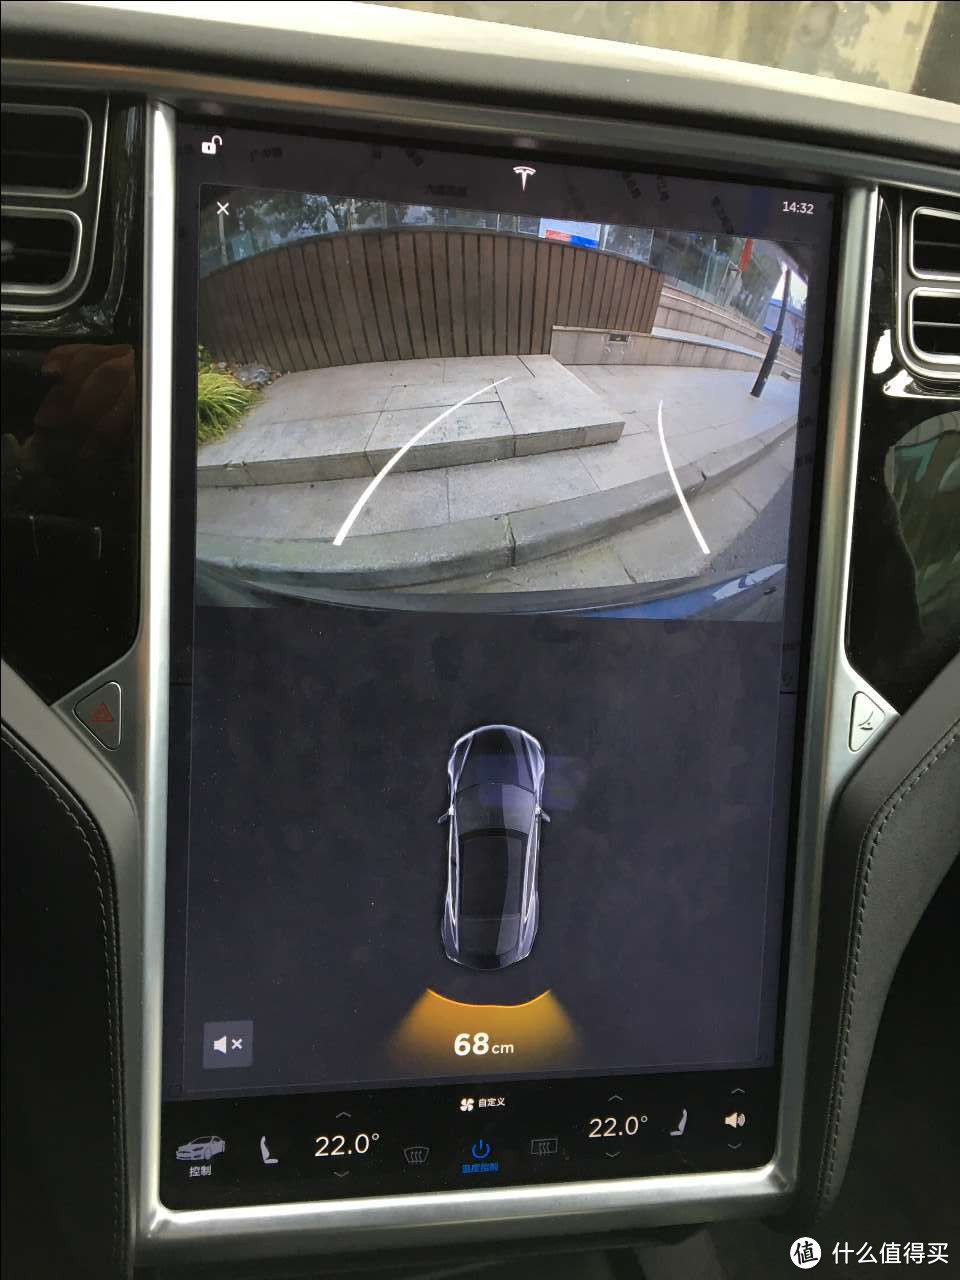 倒车雷达与倒车影像在中控大屏上的界面。